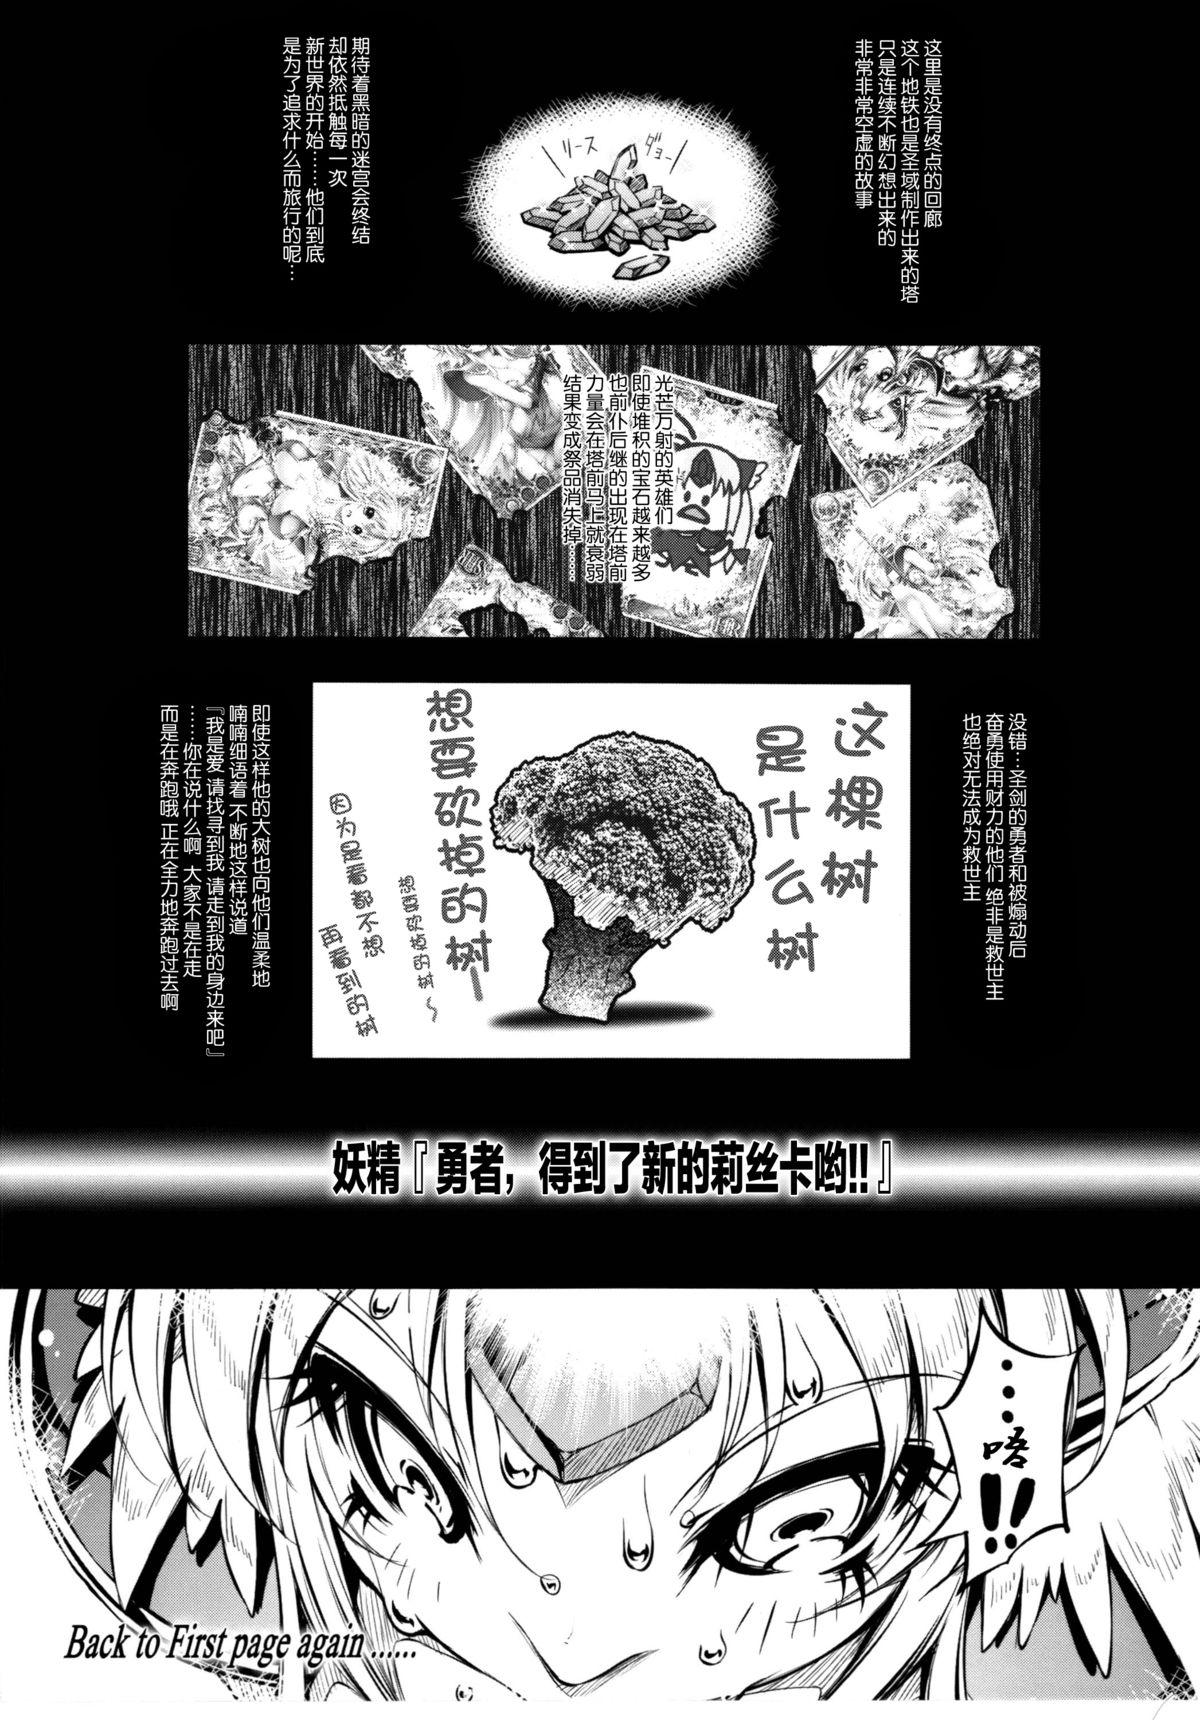 Chacal Minasan COM ni Juuman-nin no User ga Imasu. - Seiken densetsu 3 Cum On Face - Page 12